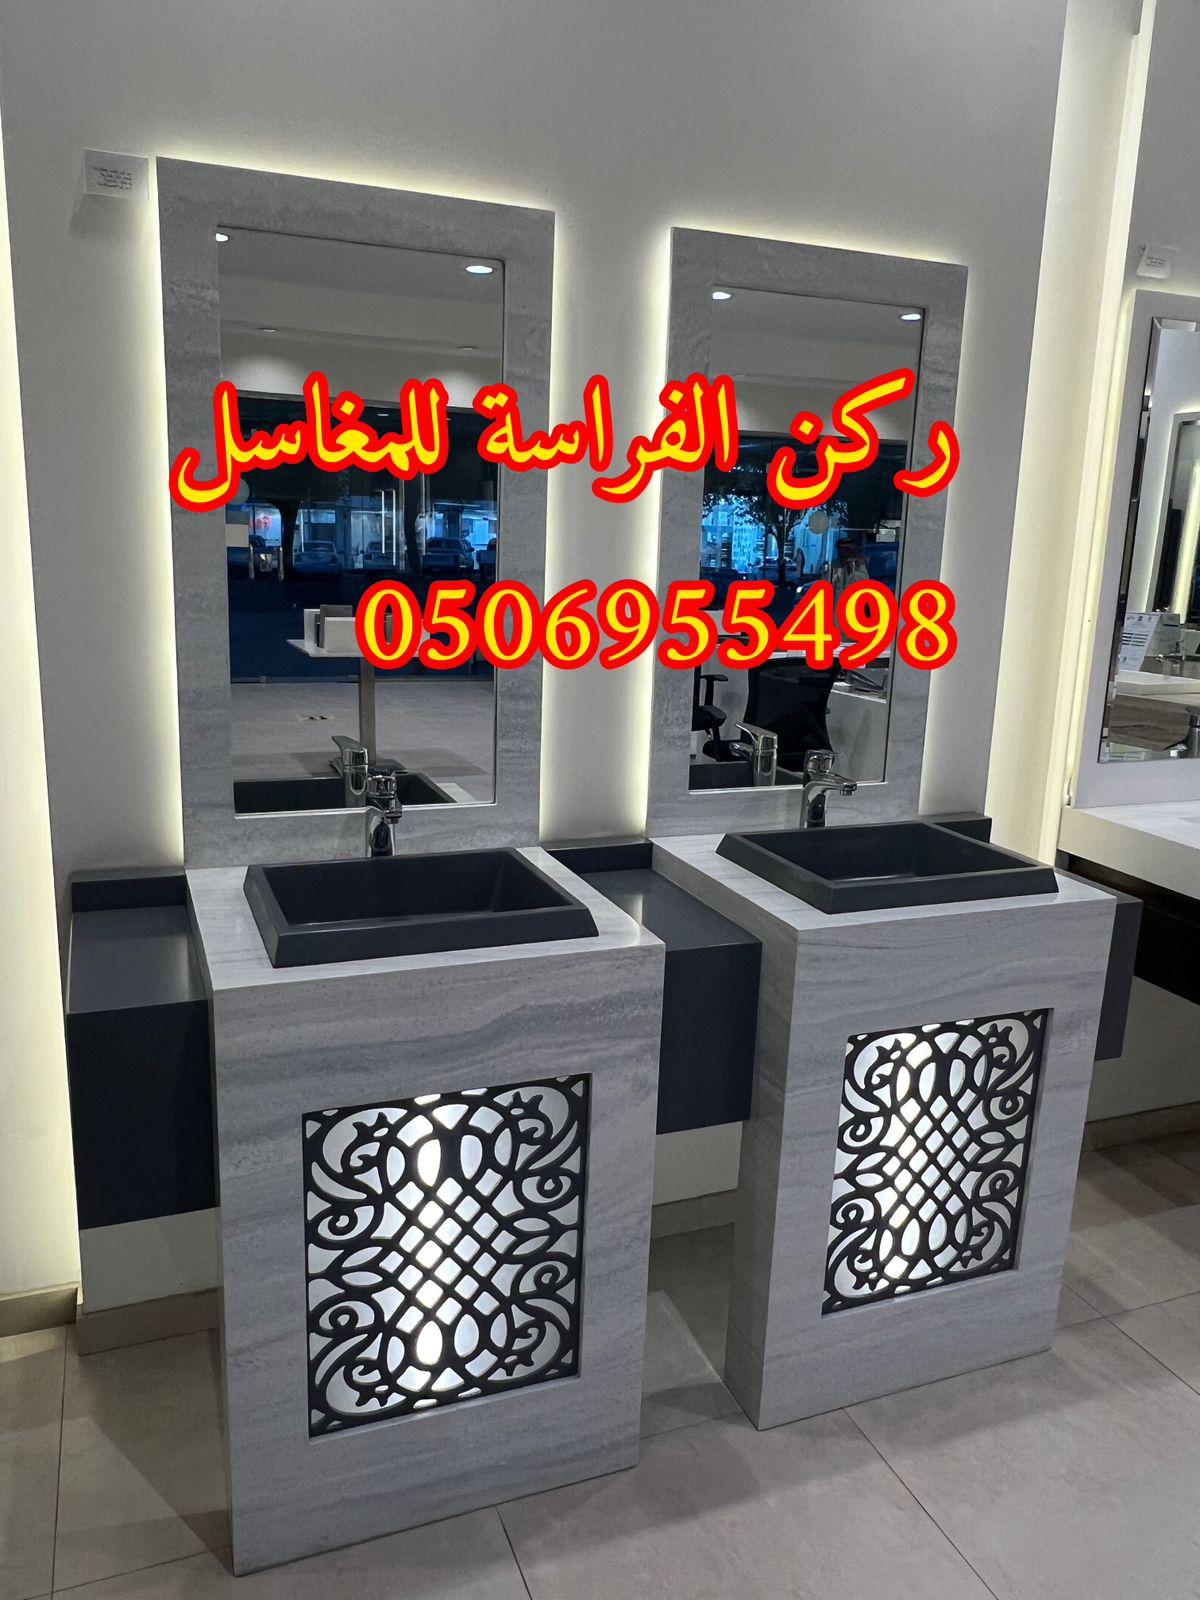 الرياض - تصاميم مغاسل رخام للمجالس في الرياض,0506955498 313931239